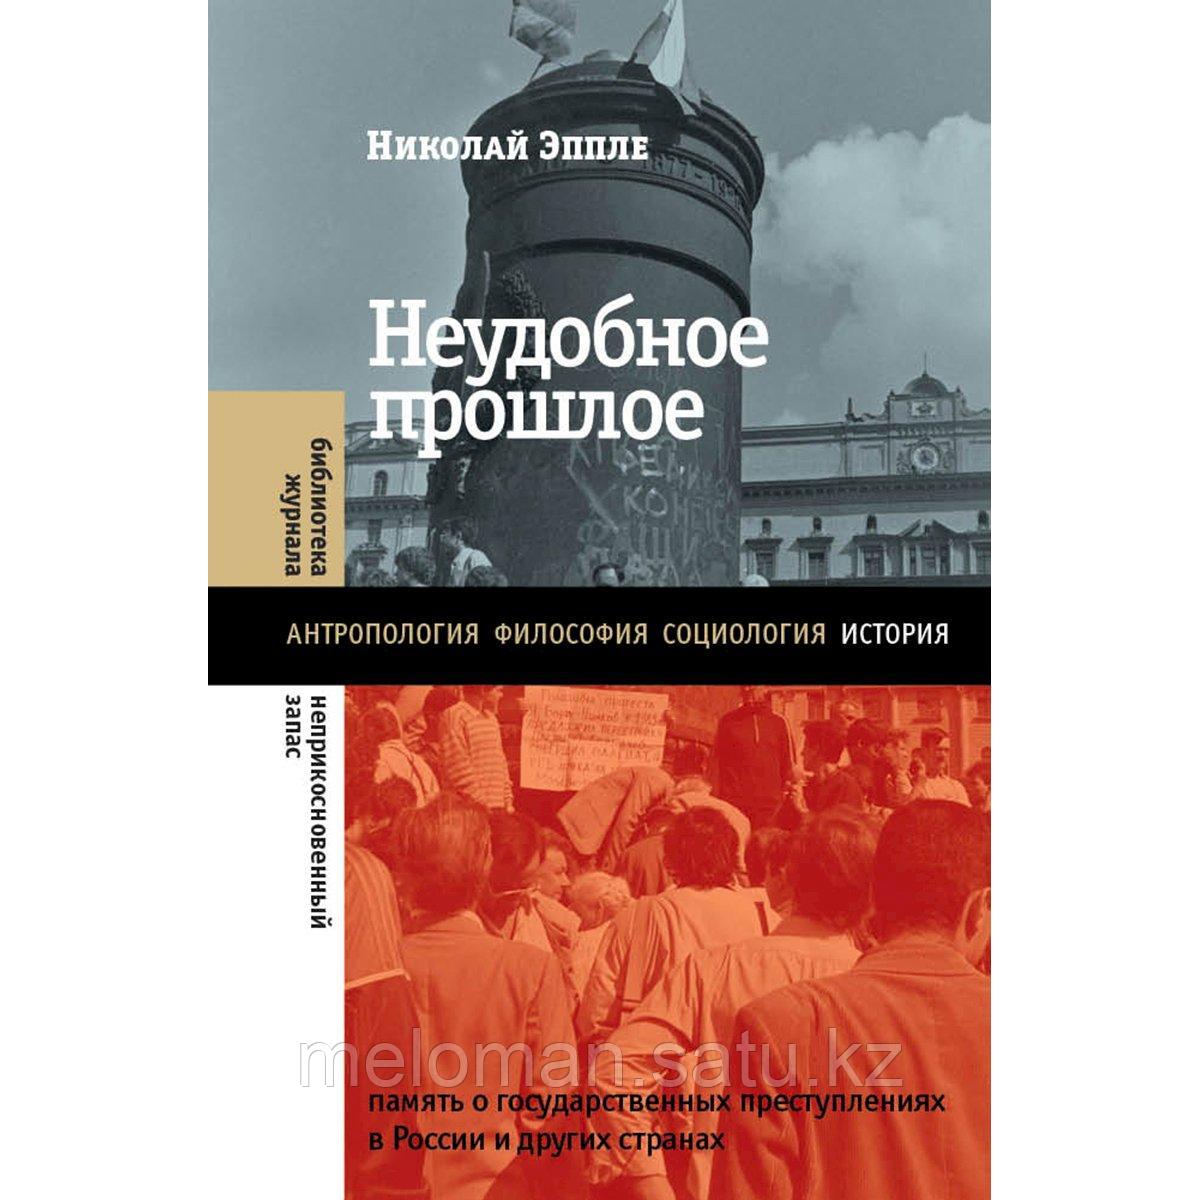 Эппле Н. В.: Неудобное прошлое: память о государственных преступлениях в России и других странах. 4-е изд.